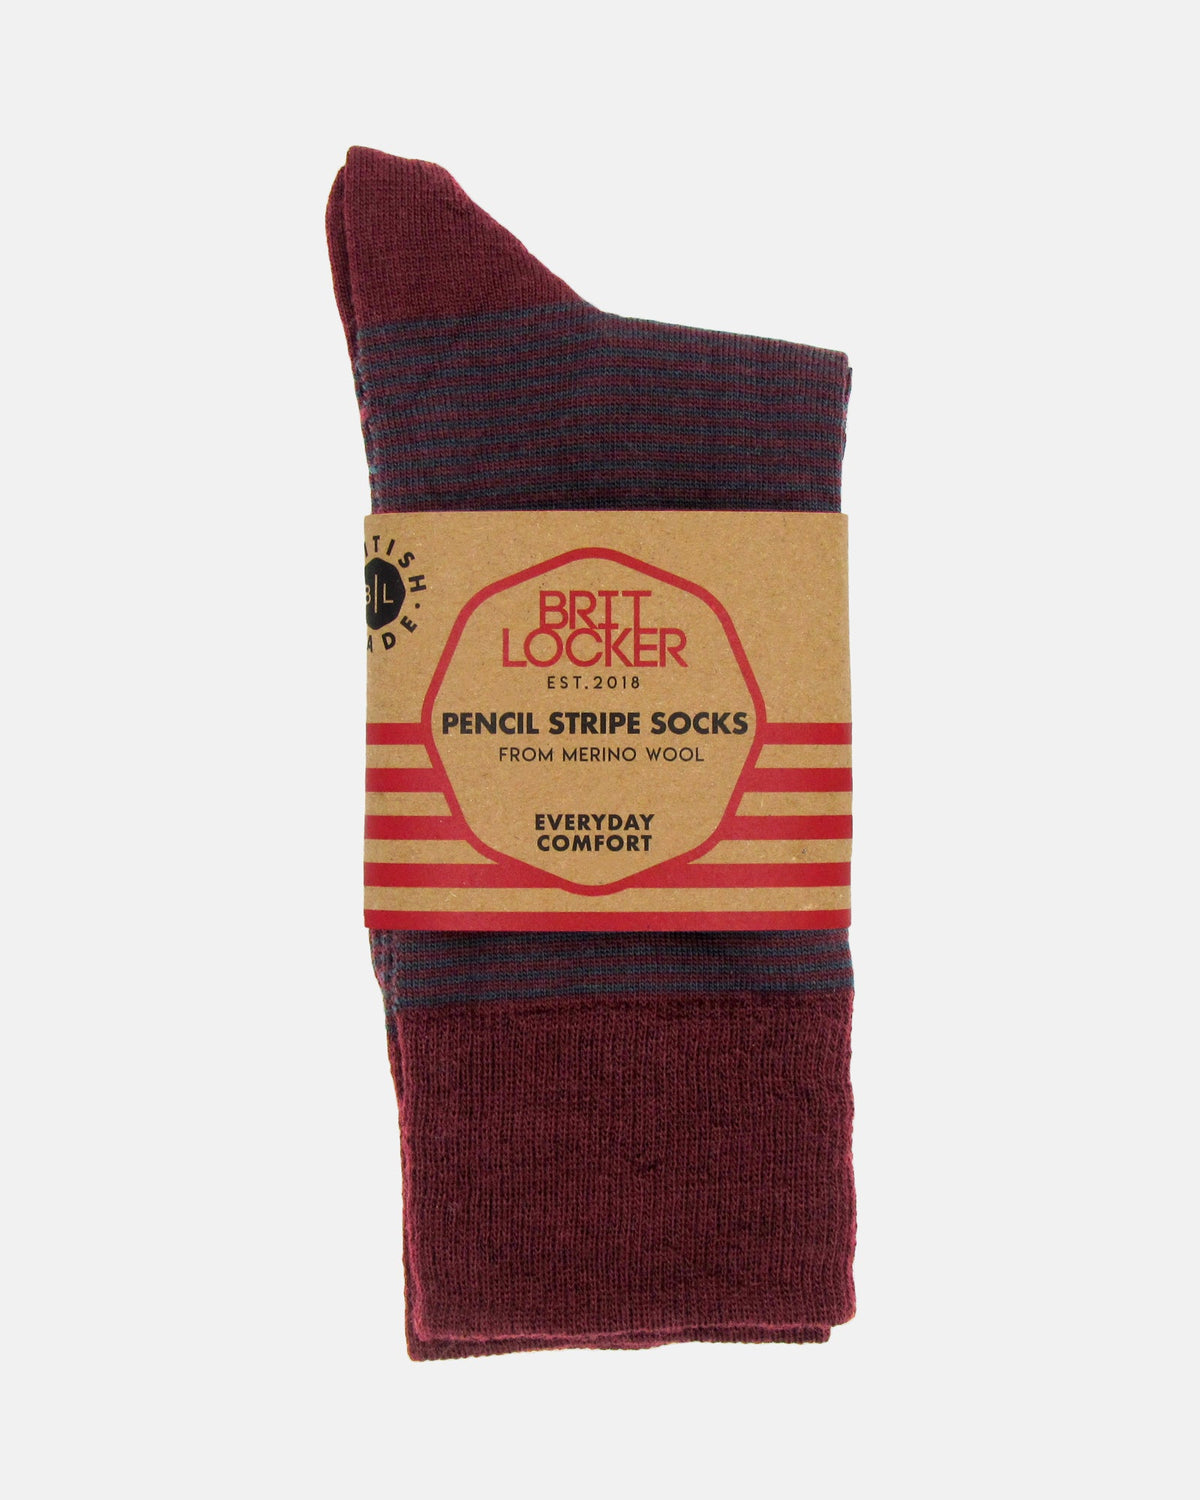 Pencil Stripe Wool Socks - Burgundy/Bottle Green - BRIT LOCKER